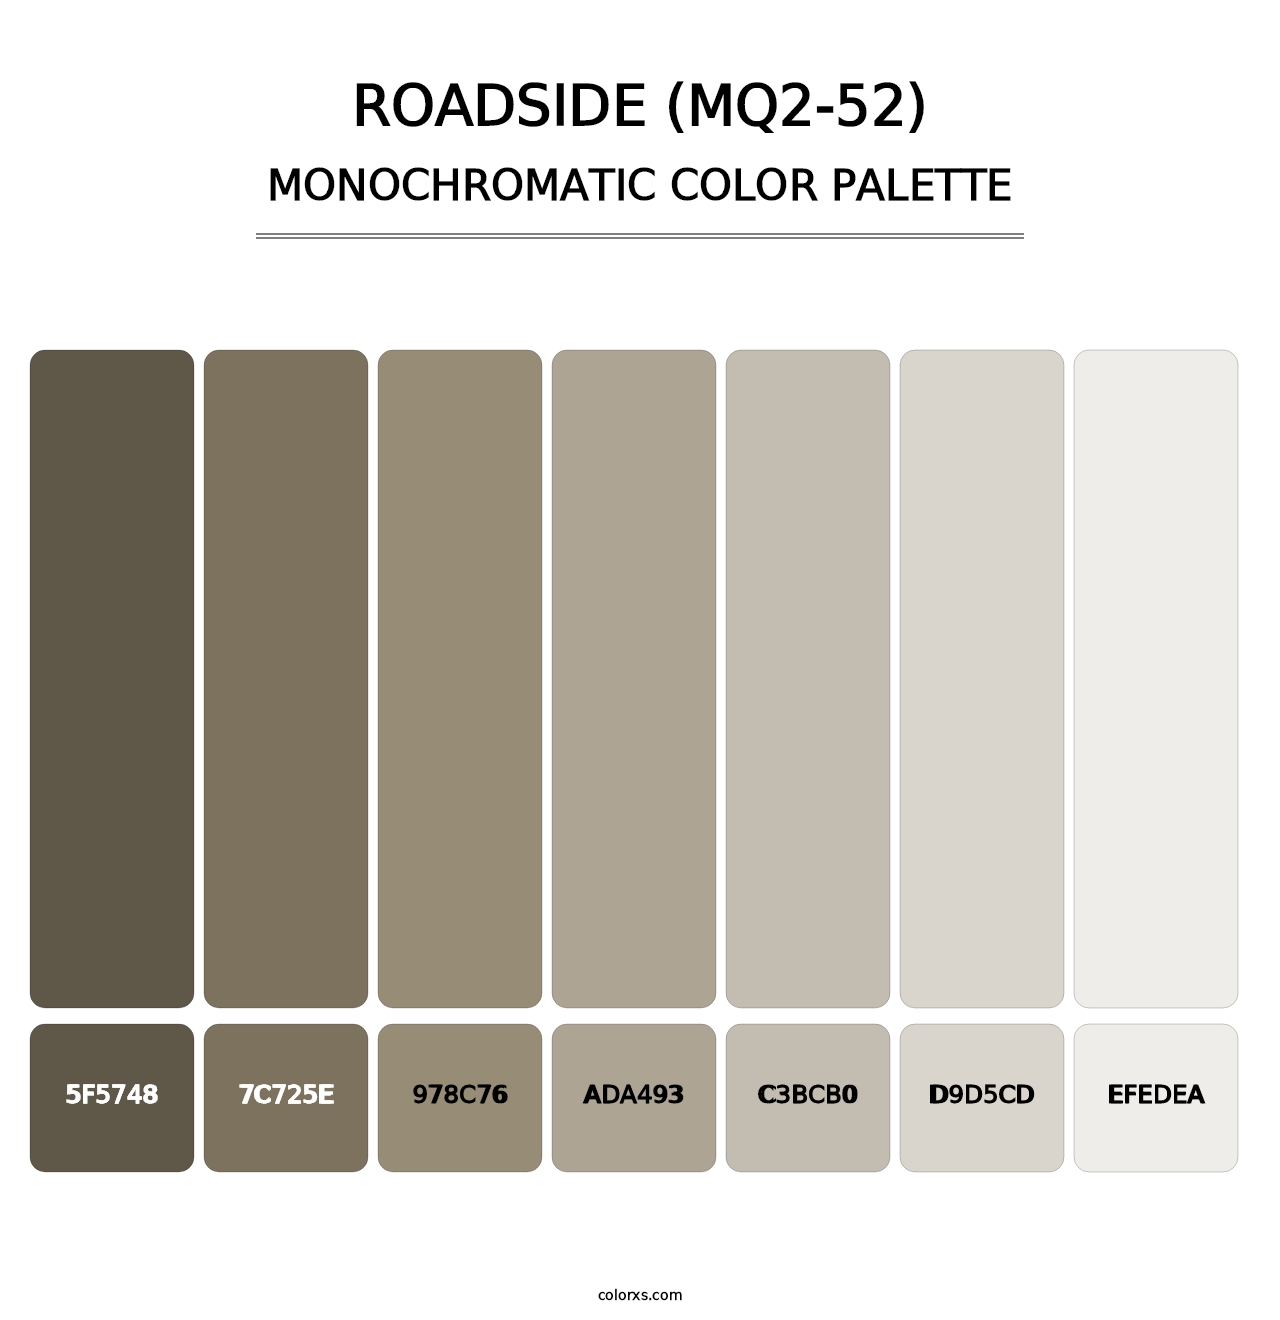 Roadside (MQ2-52) - Monochromatic Color Palette